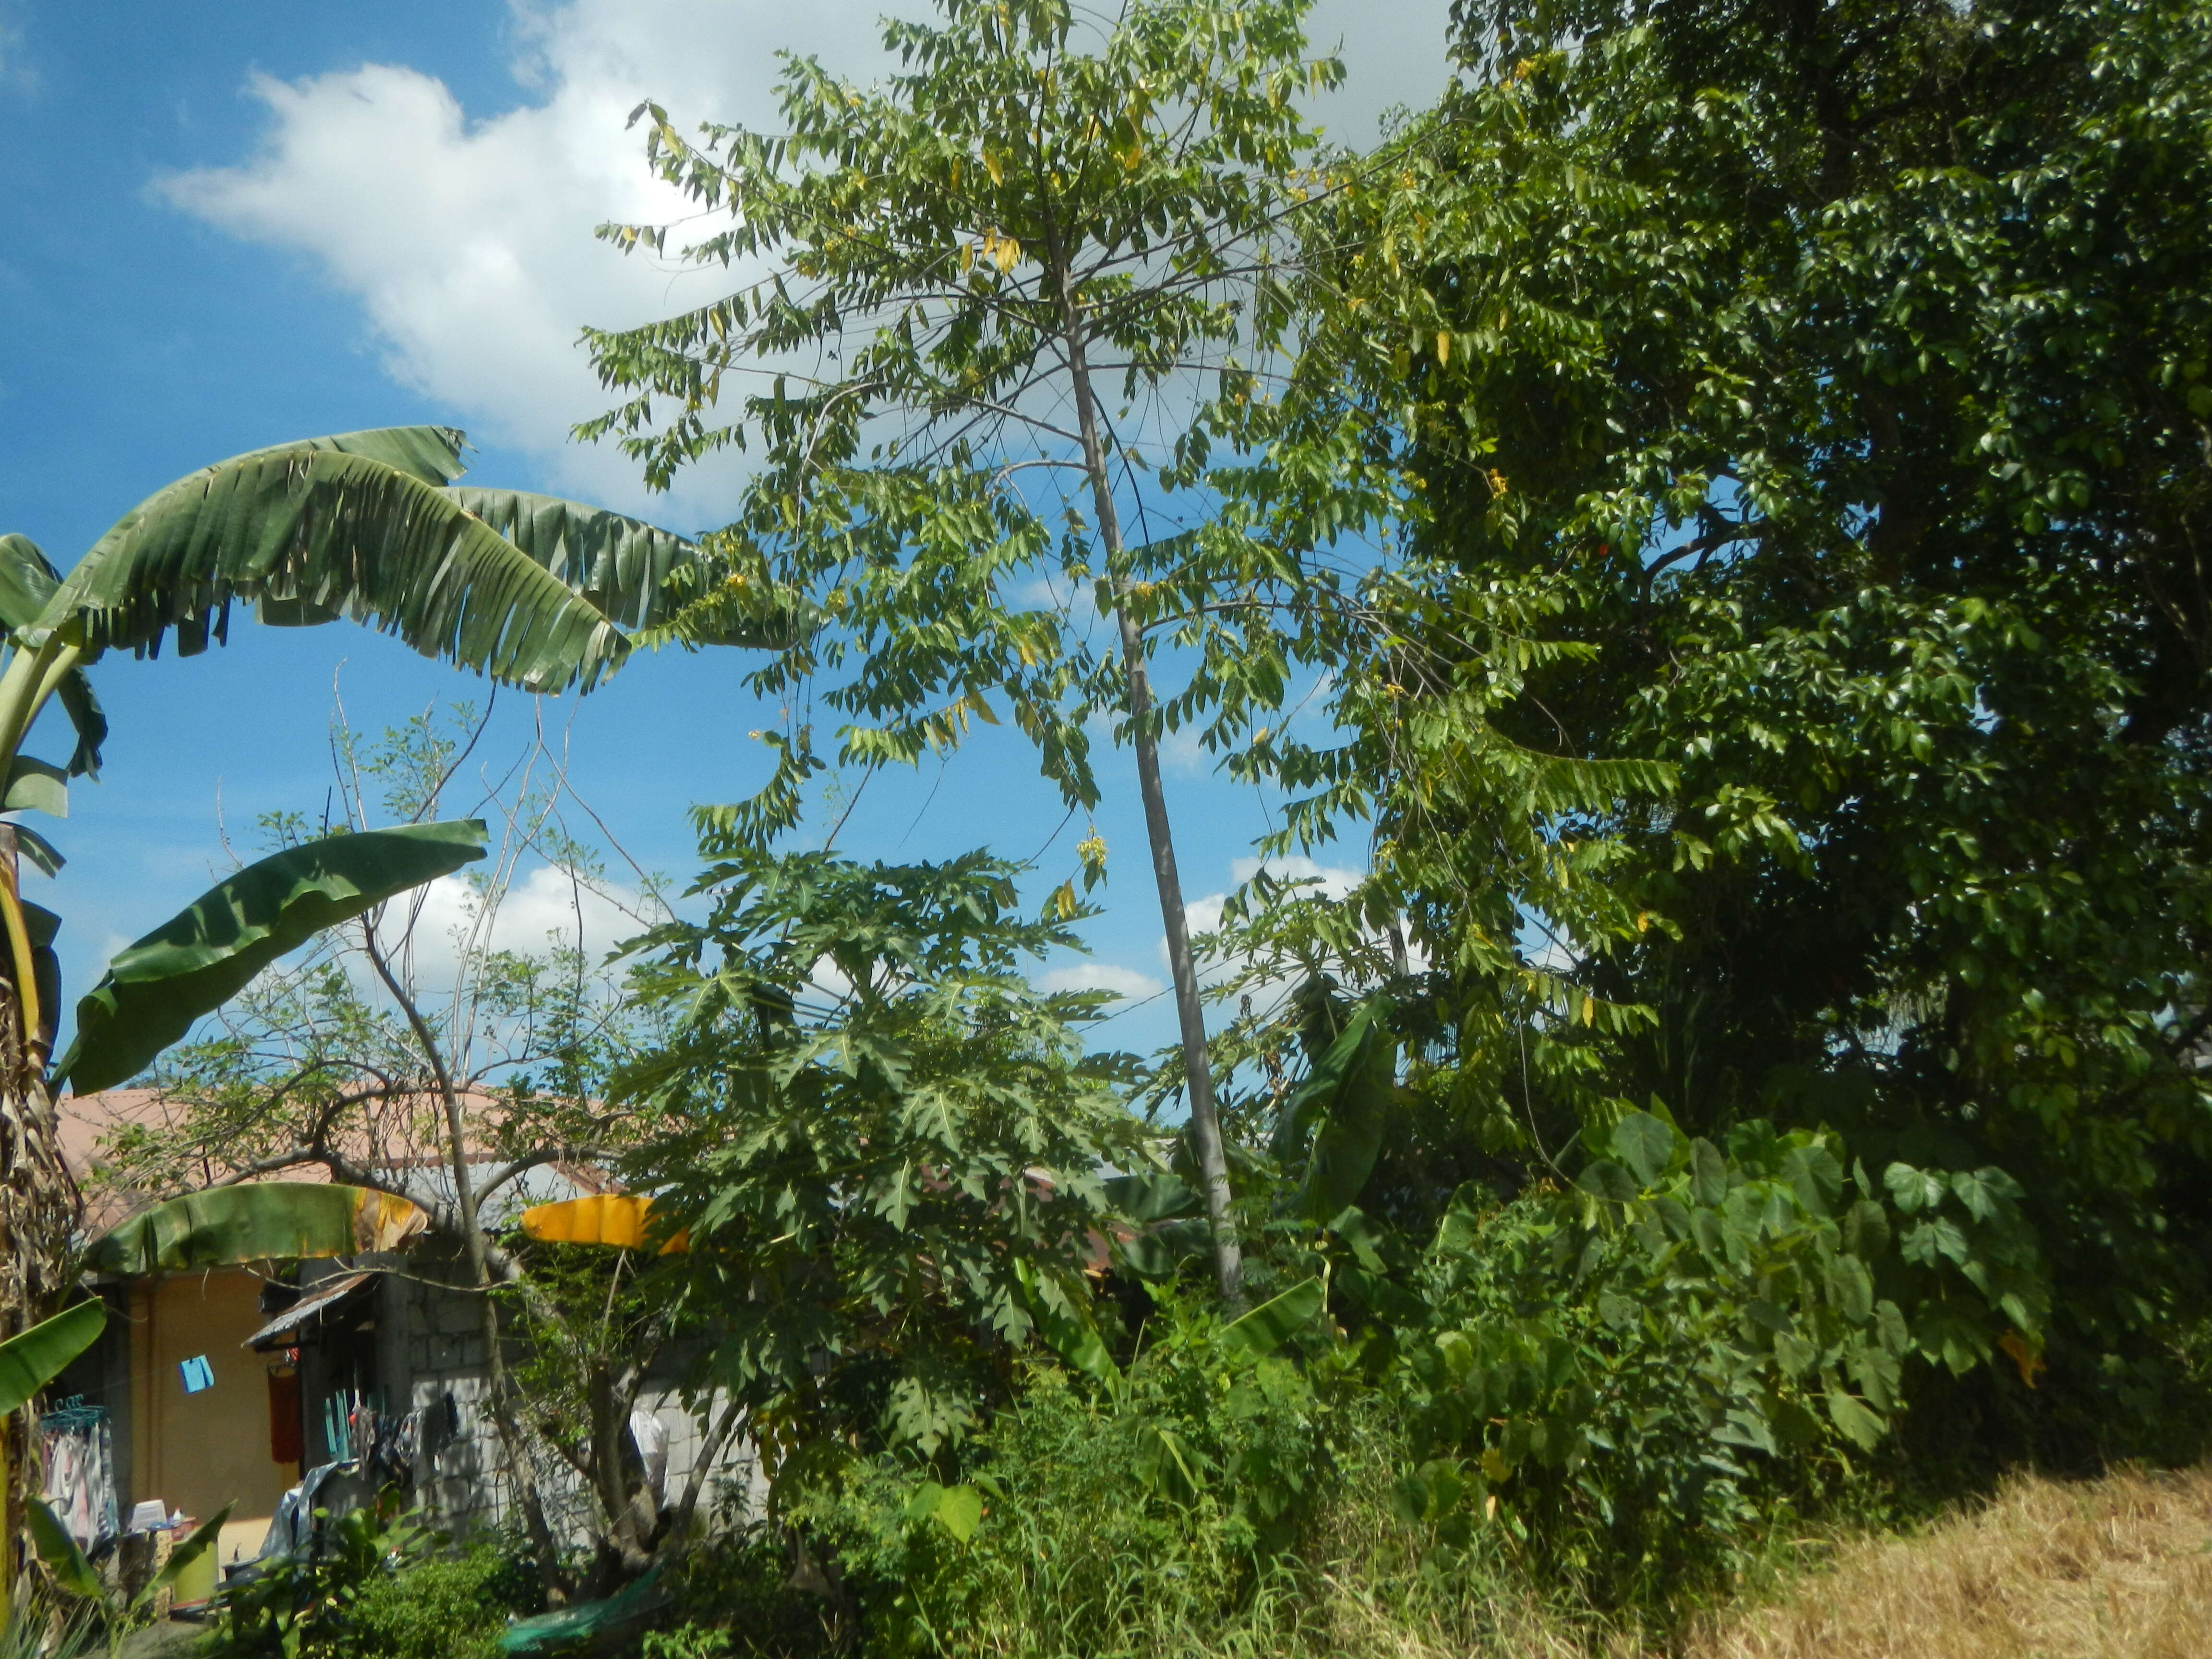 Image of ilang-ilang